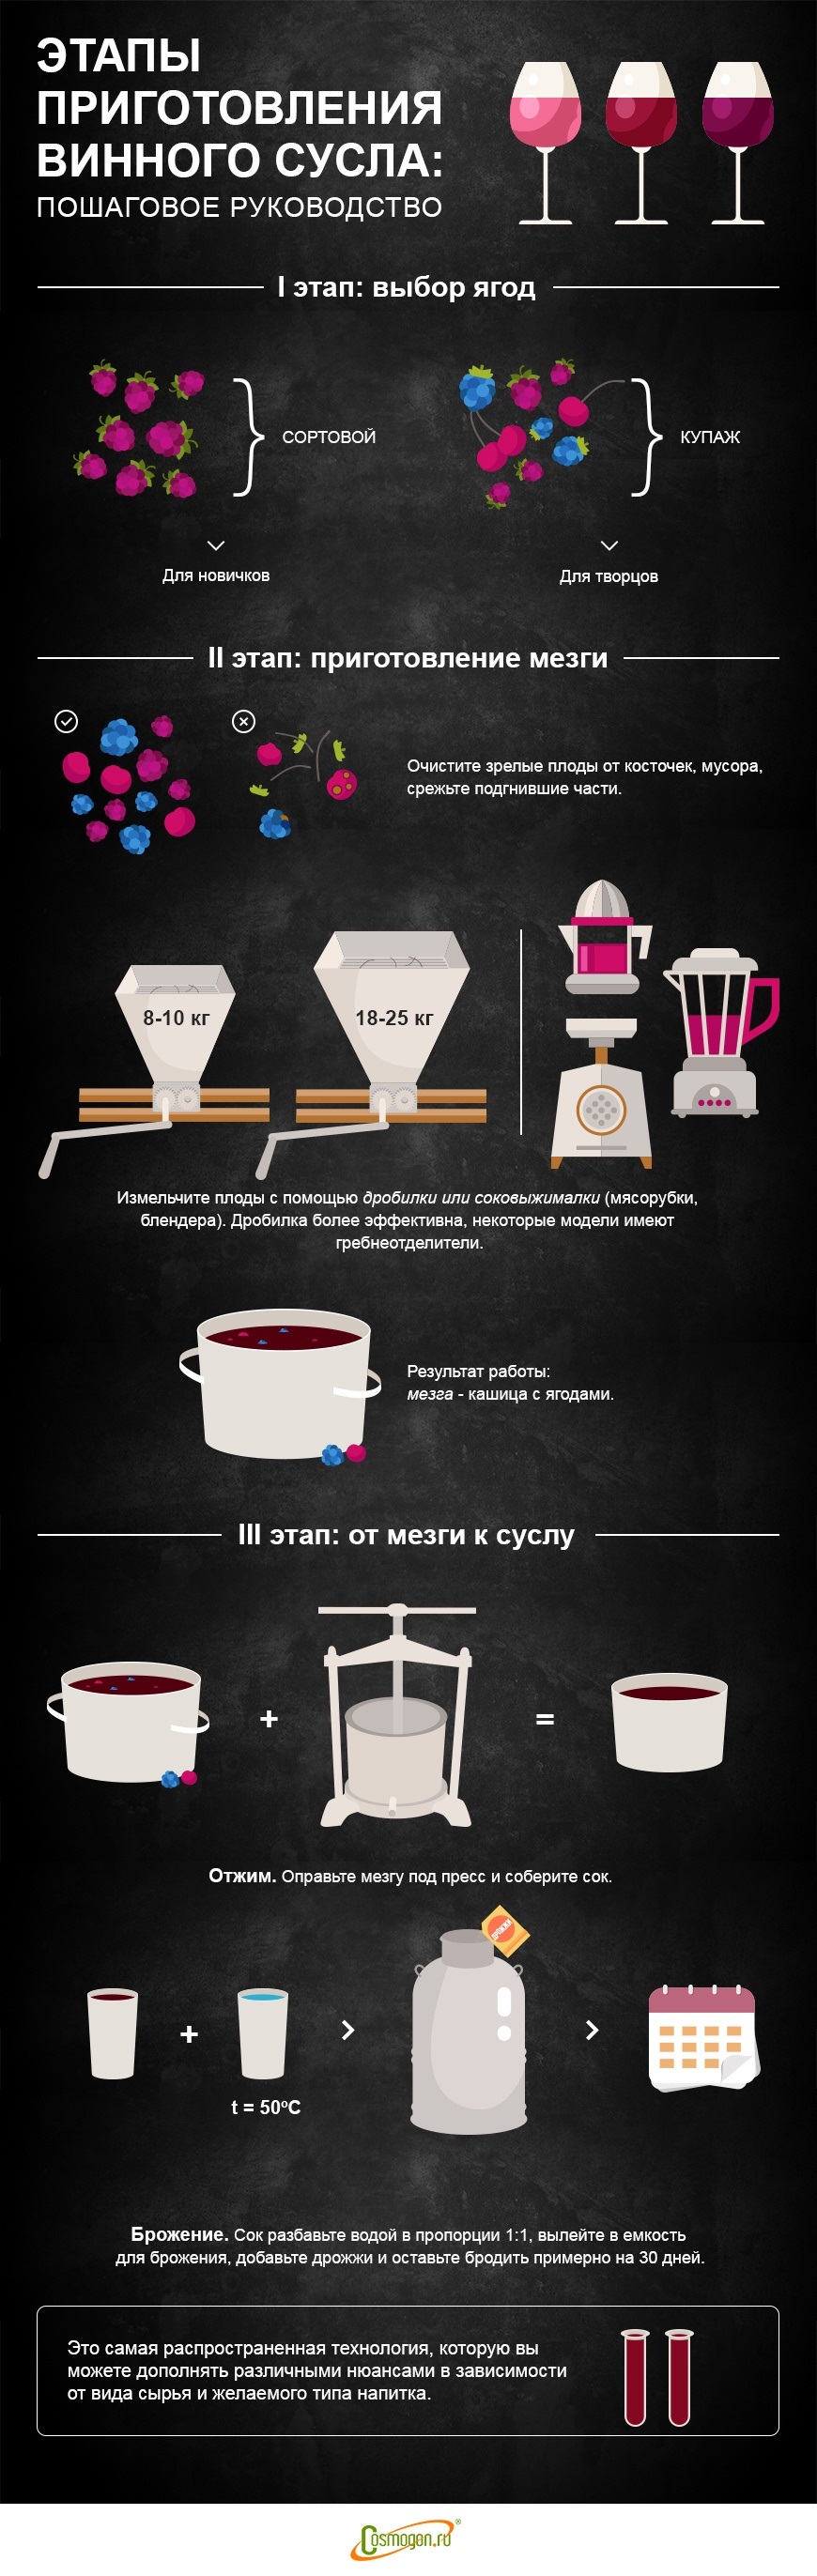 Пример инфографики: этапы приготовления винного сусла